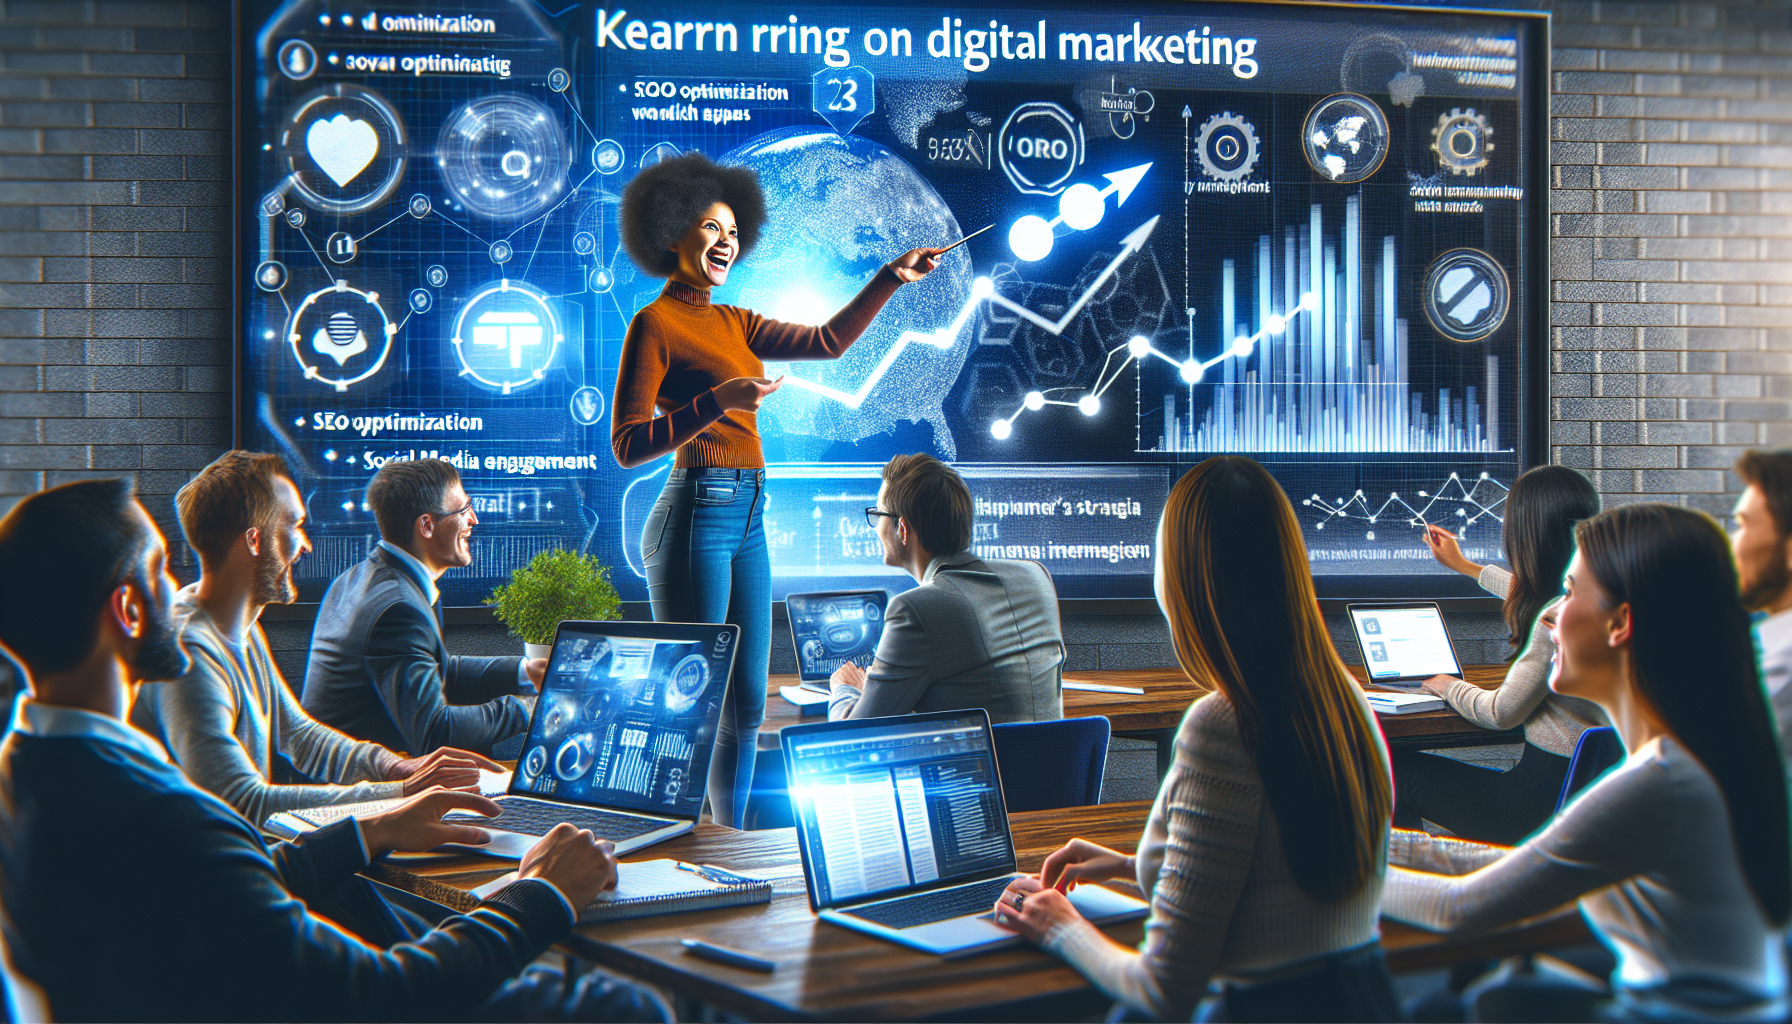 découvrez les meilleures stratégies de marketing digital lors de notre formation en marketing digital. apprenez à élaborer une stratégie de marketing digital efficace et à optimiser votre présence en ligne.